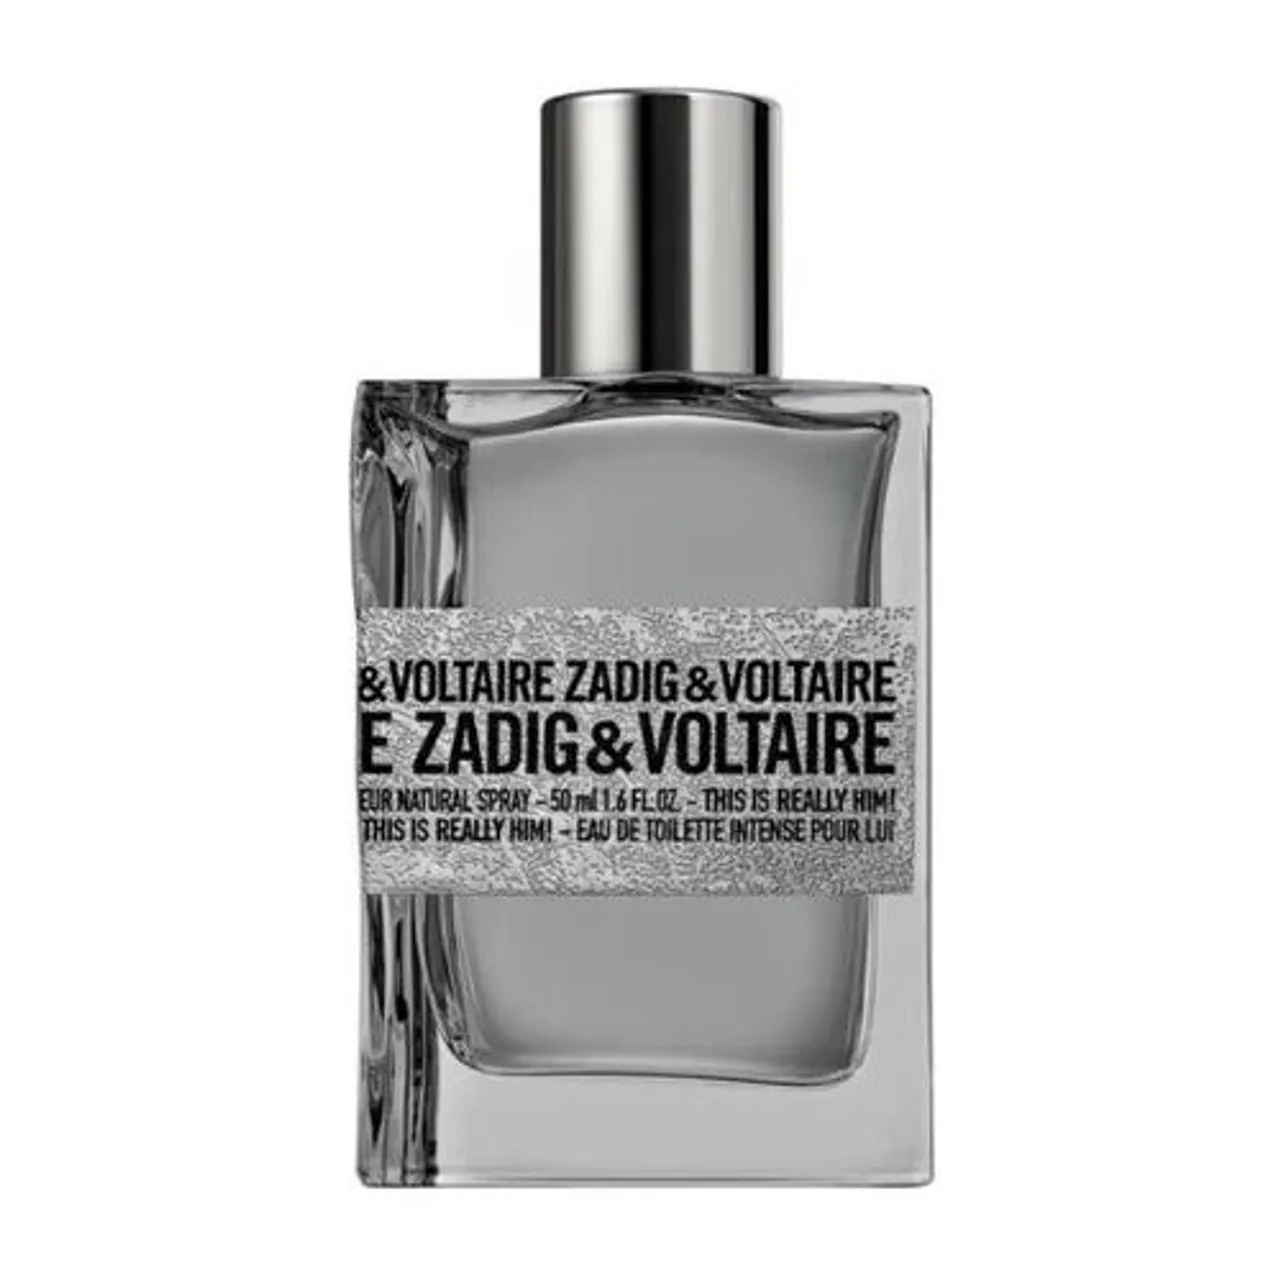 Zadig&Voltaire This Is Really Him! Eau de Toilette 50 ml